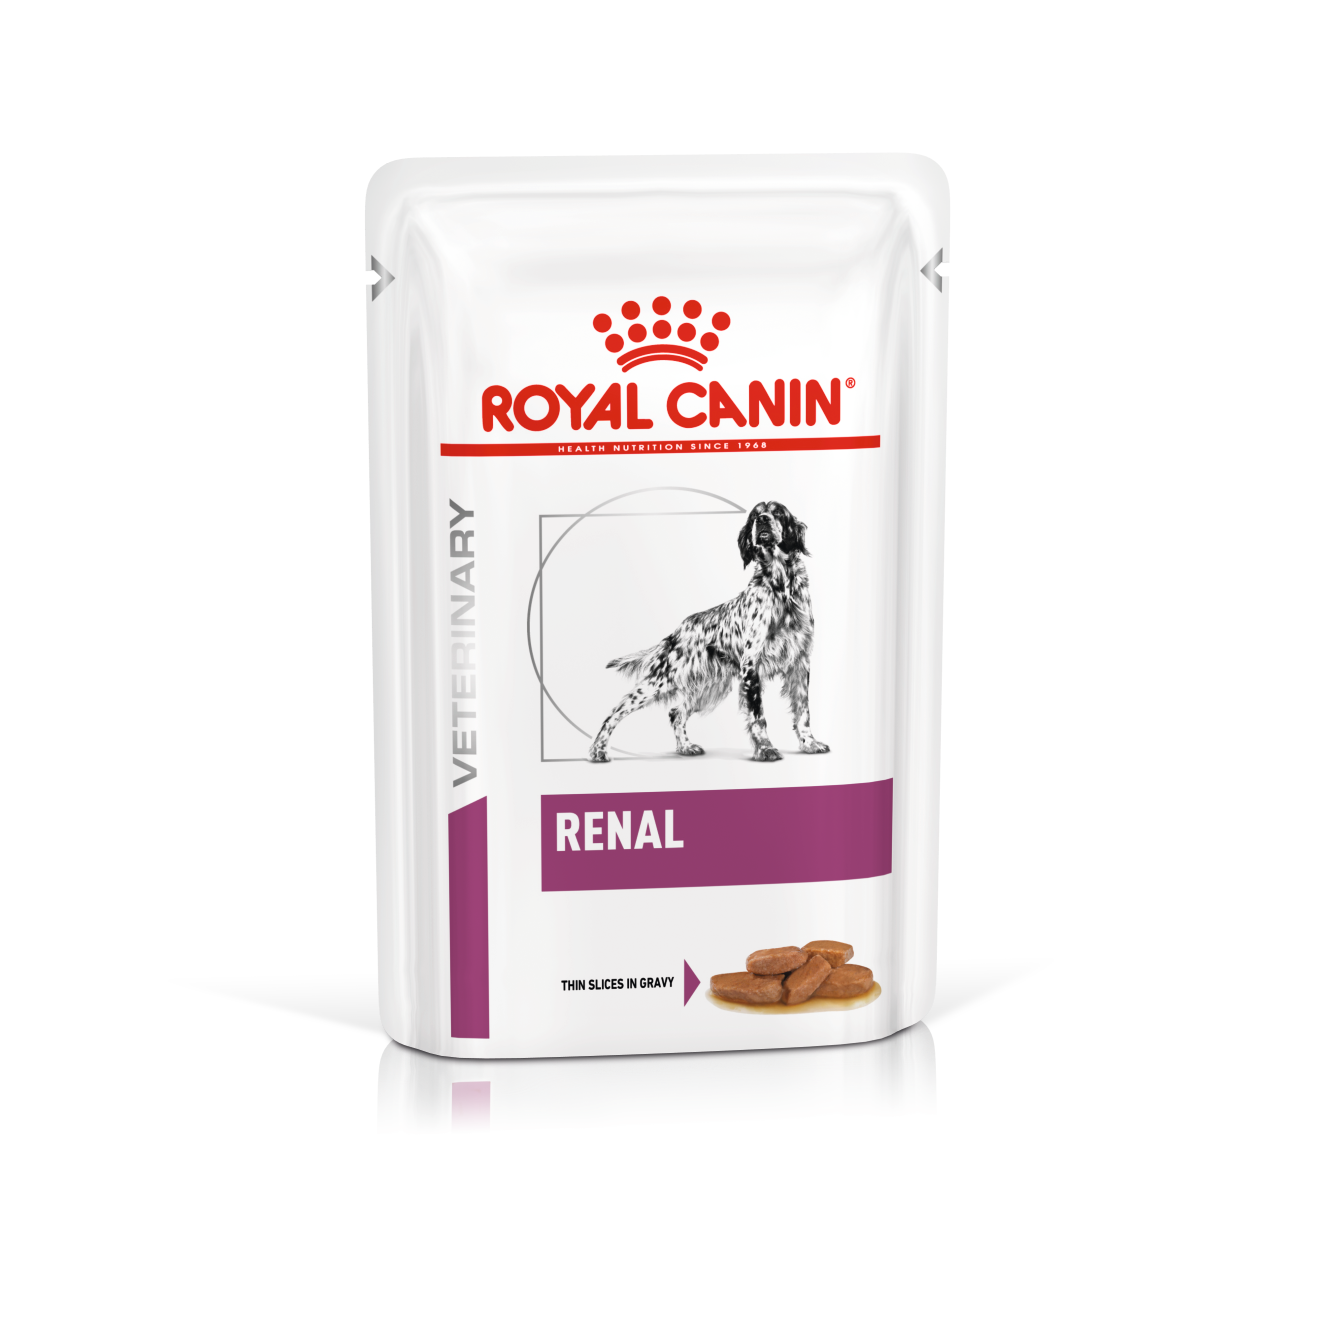 Royal Canin Renal hond <br>2x  12x100 gram Portie/maaltijdzakjes